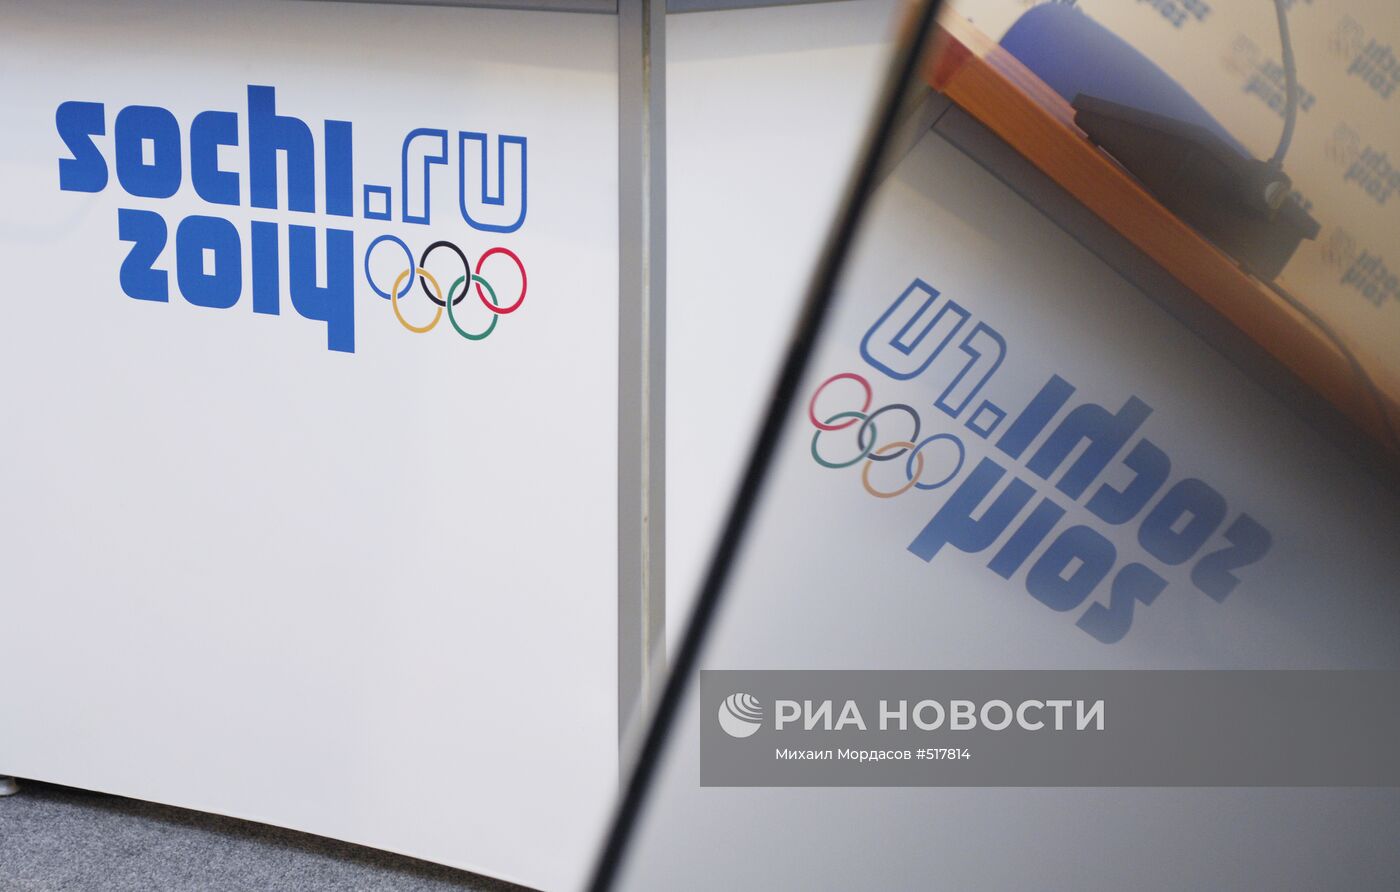 Новый логотип Олимпийских Зимних Игр-2014